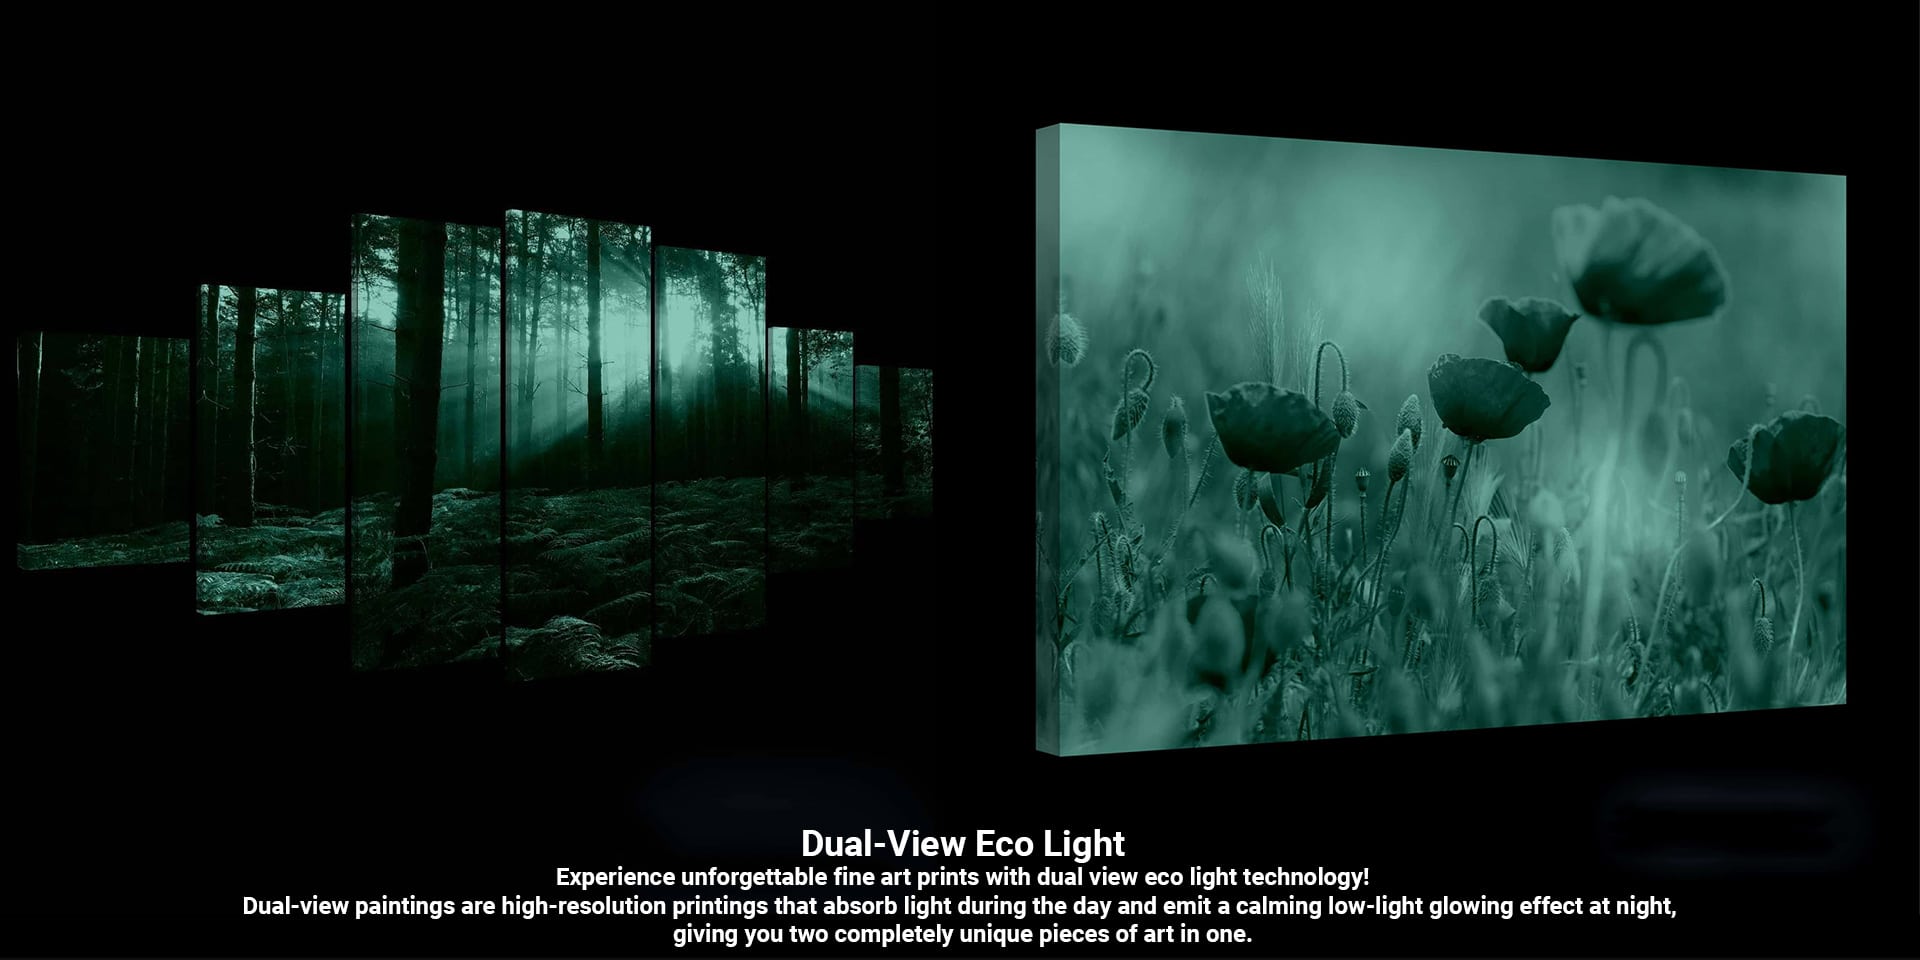 Dual-View Eco Light